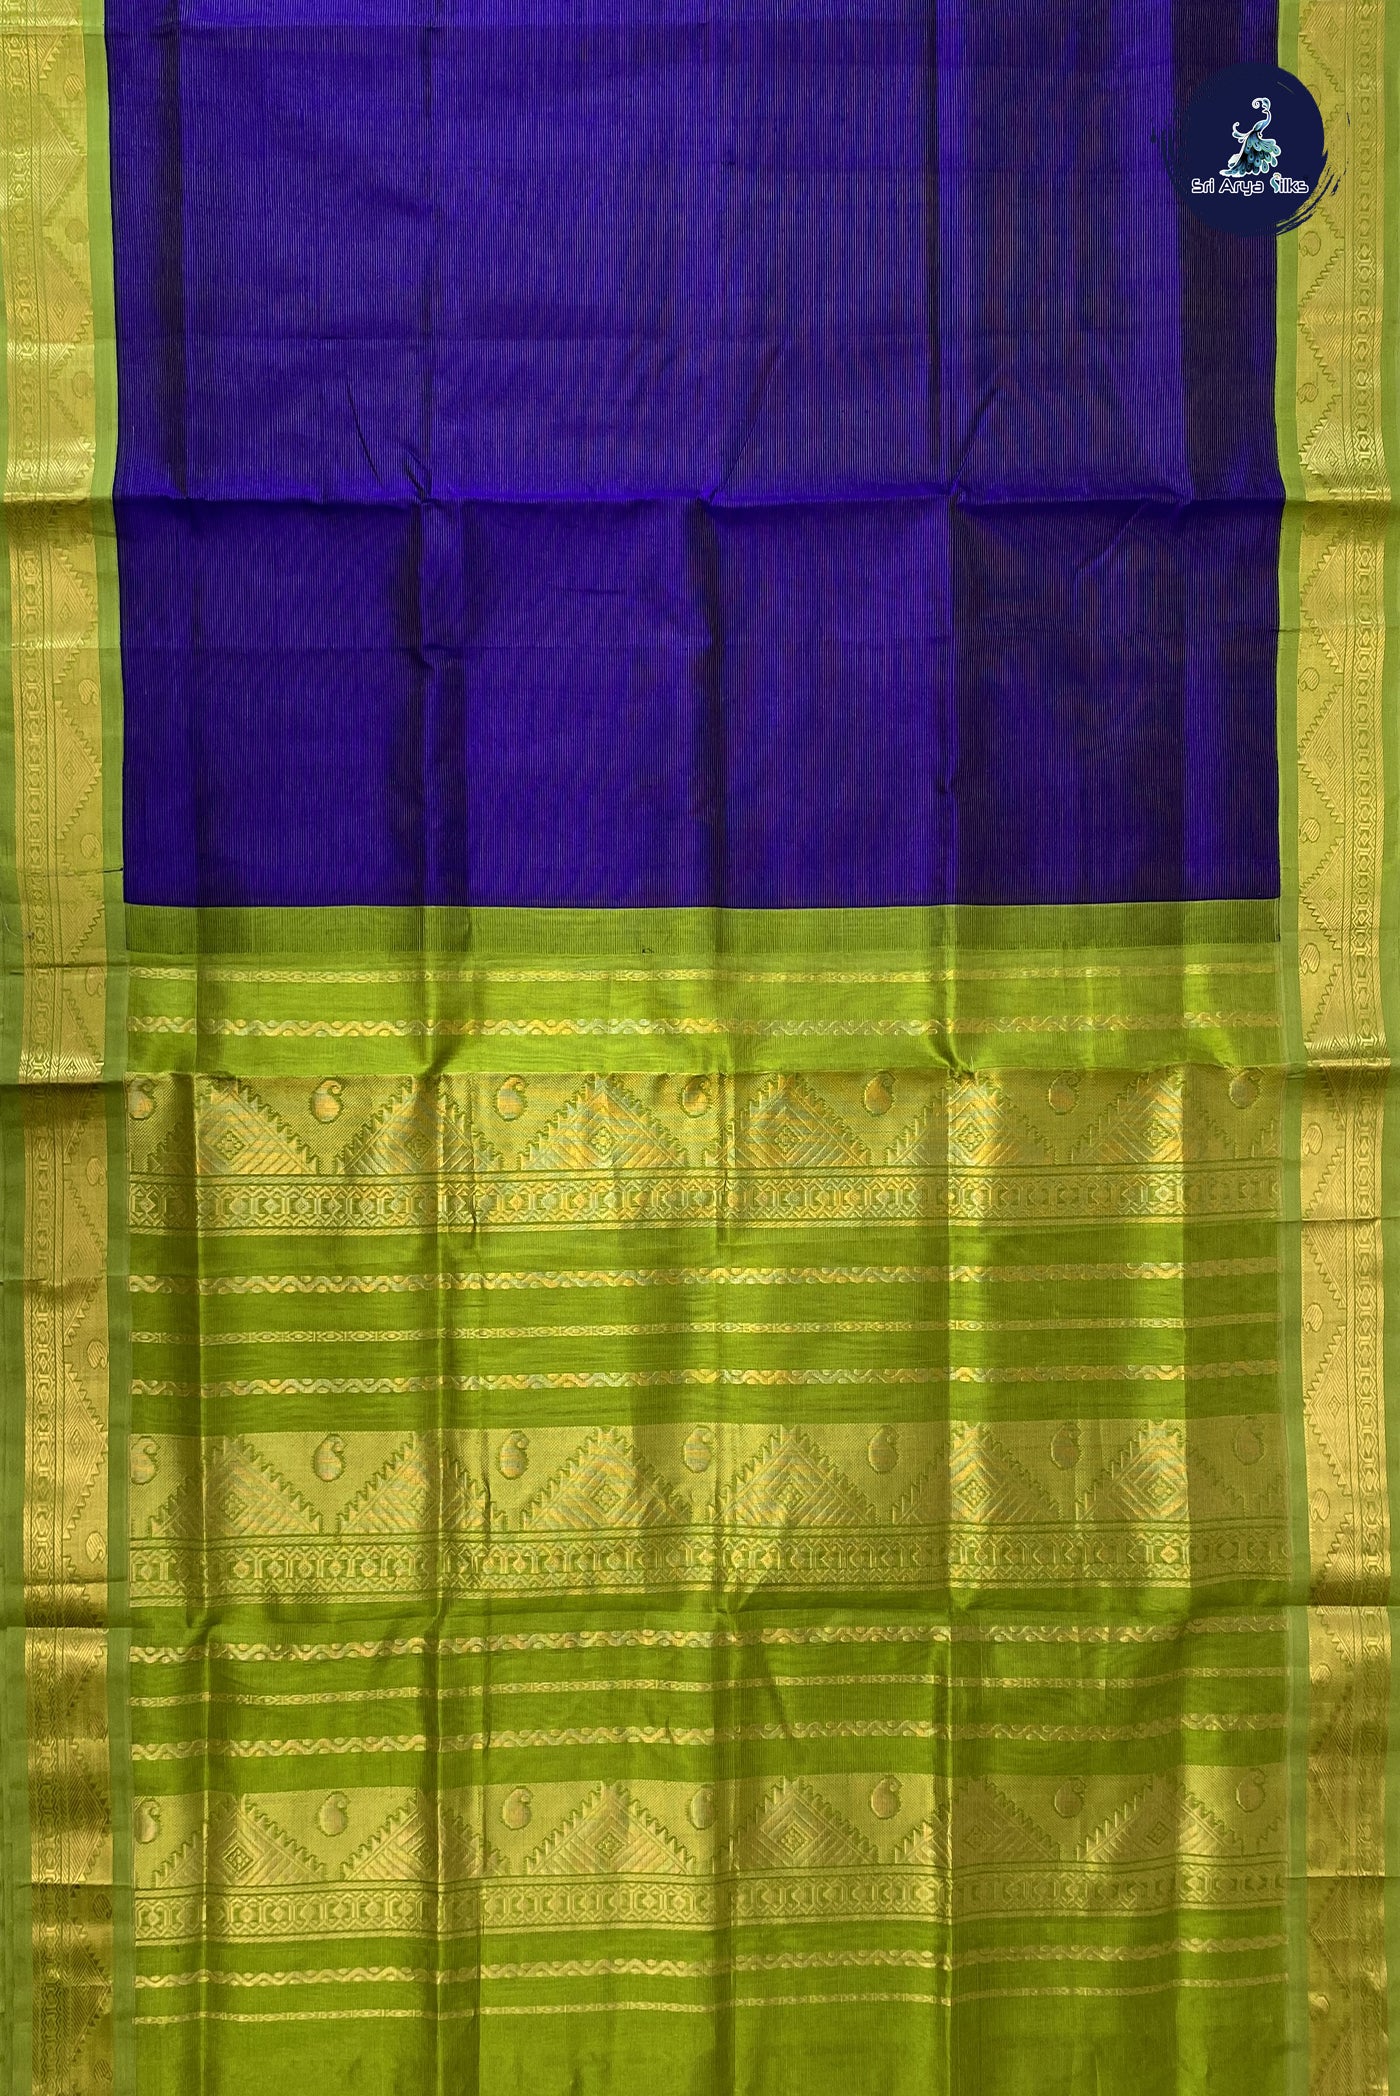 Blue Vaira Oosi Saree With Vaira Oosi Pattern